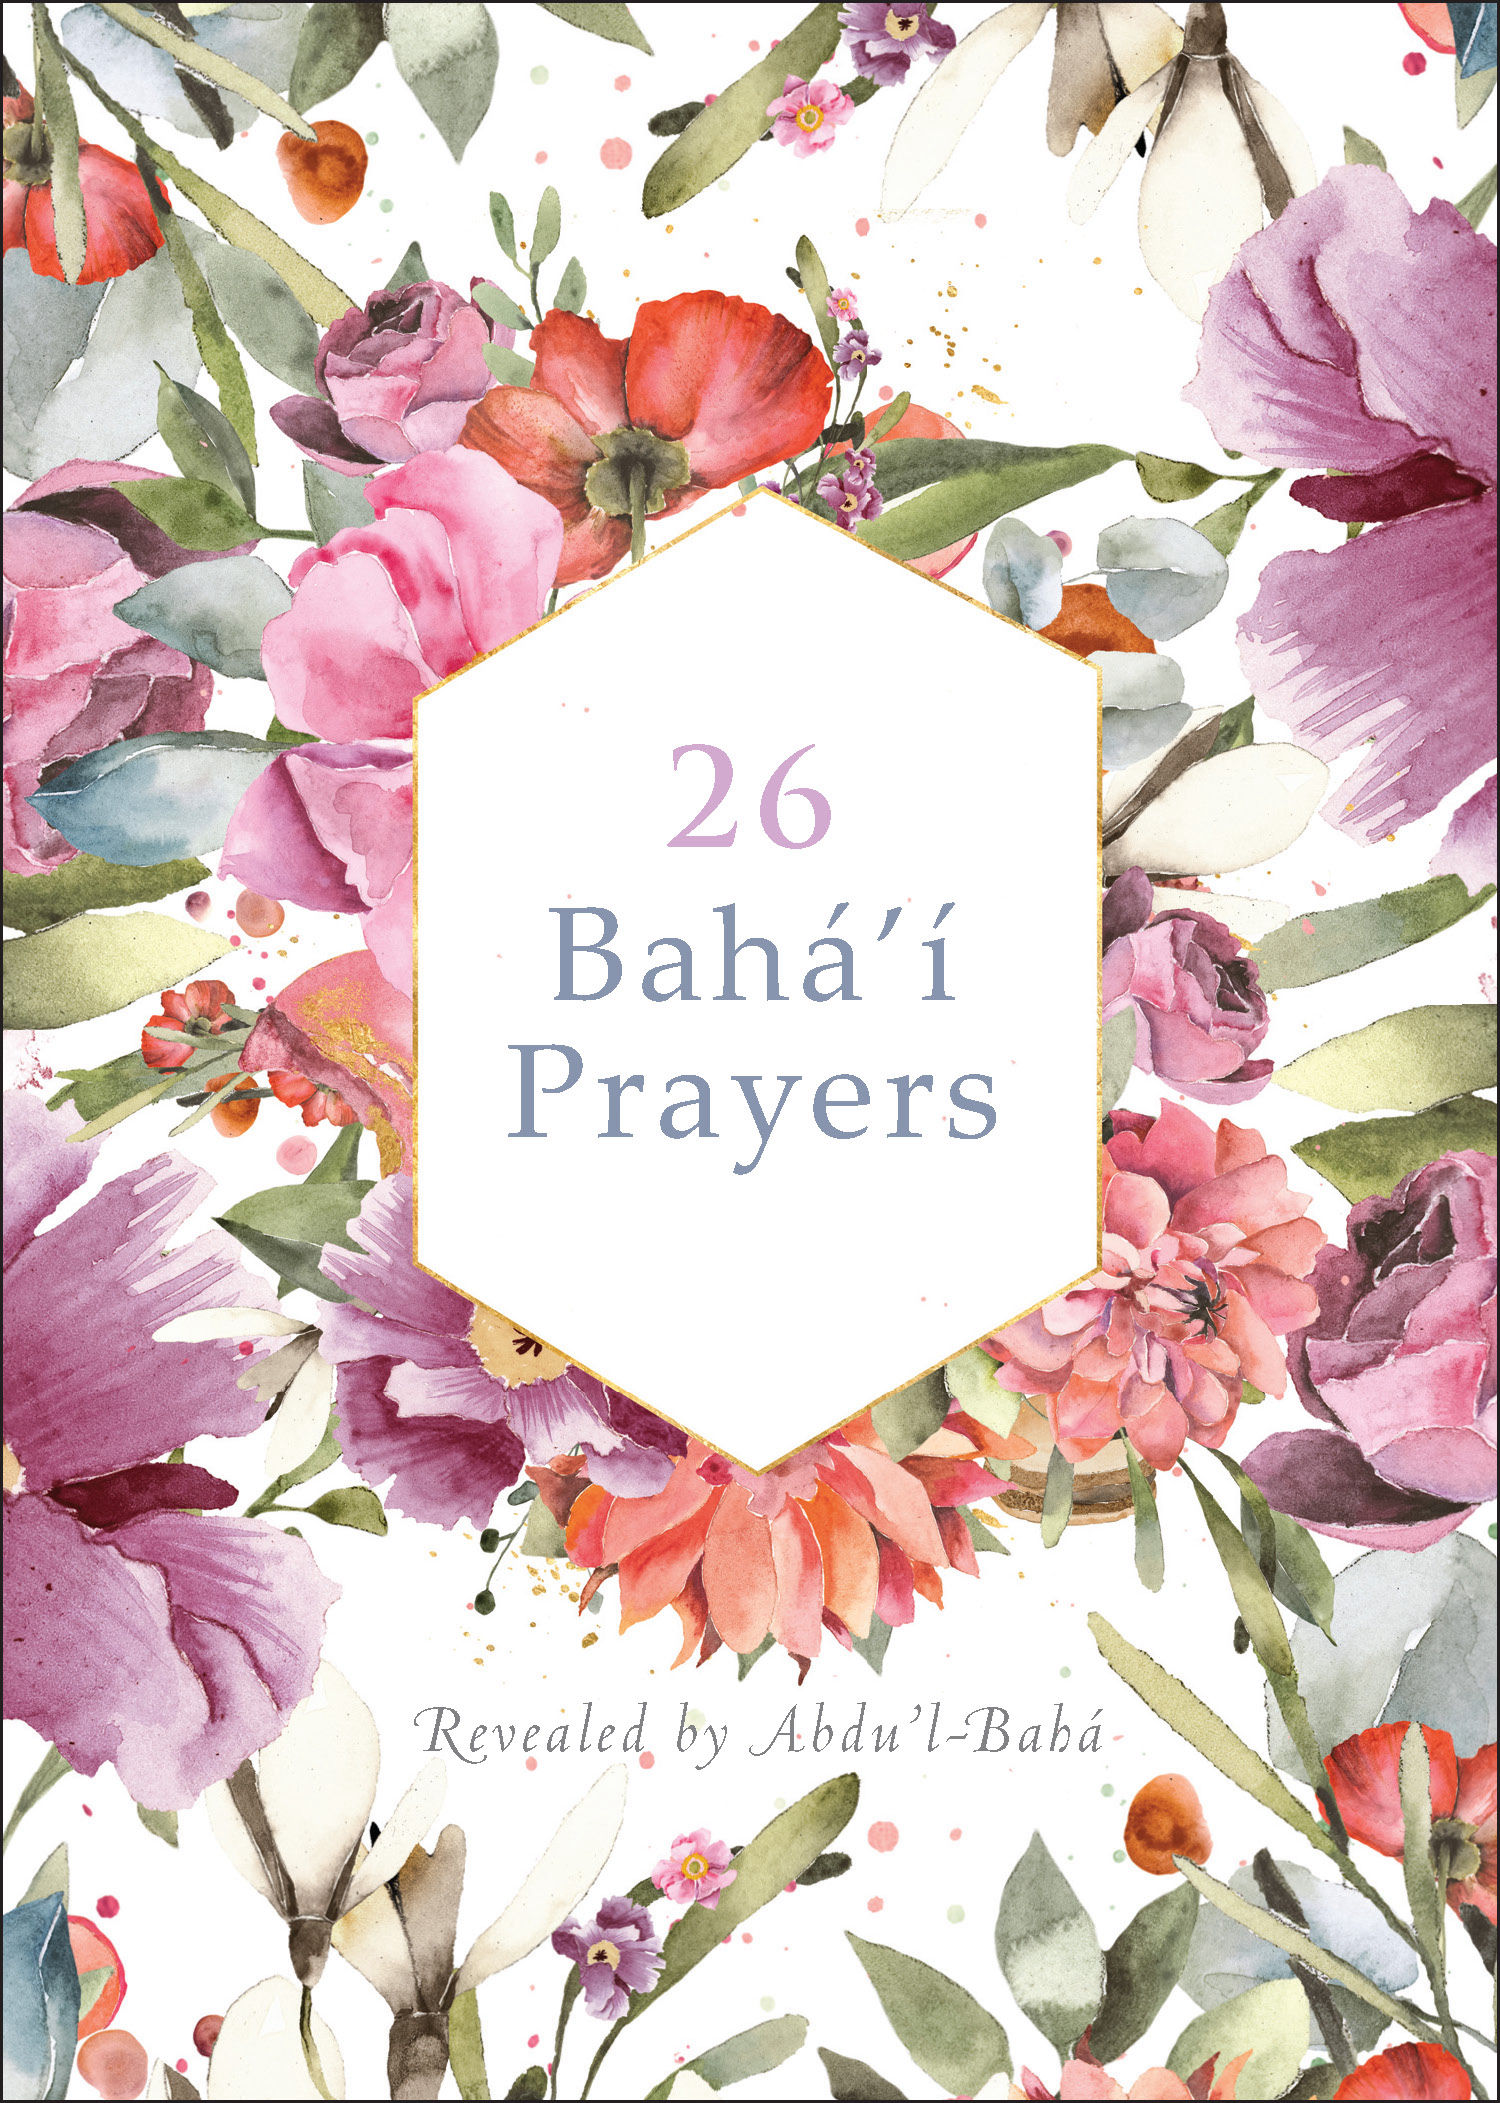 26 Bahá'í Prayers revealed by Ábdu'l-Bahá